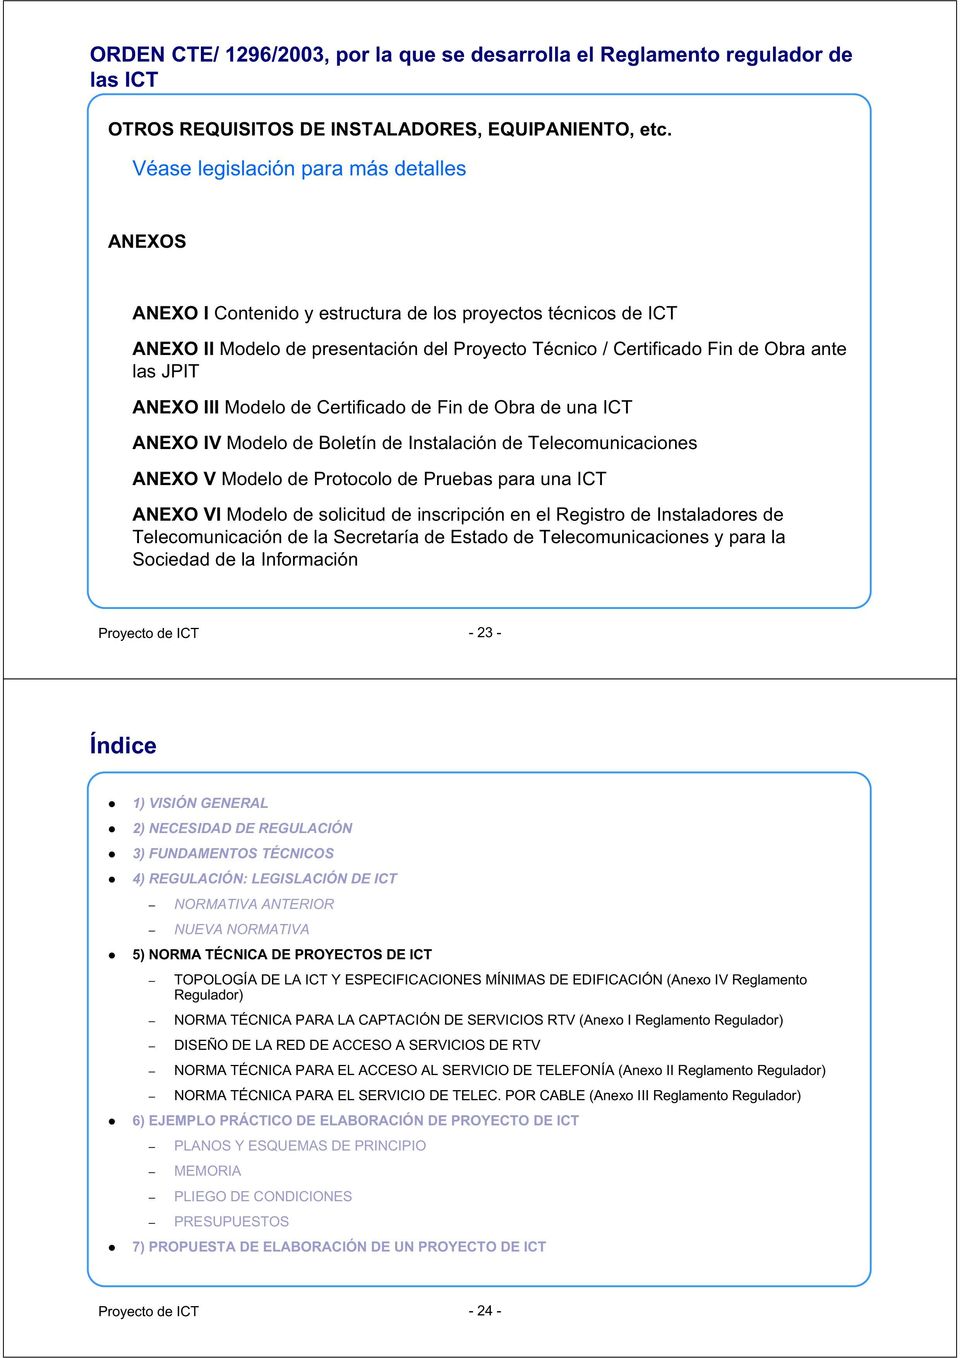 ANEXO III Modelo de Certificado de Fin de Obra de una ICT ANEXO IV Modelo de Boletín de Instalación de Telecomunicaciones ANEXO V Modelo de Protocolo de Pruebas para una ICT ANEXO VI Modelo de